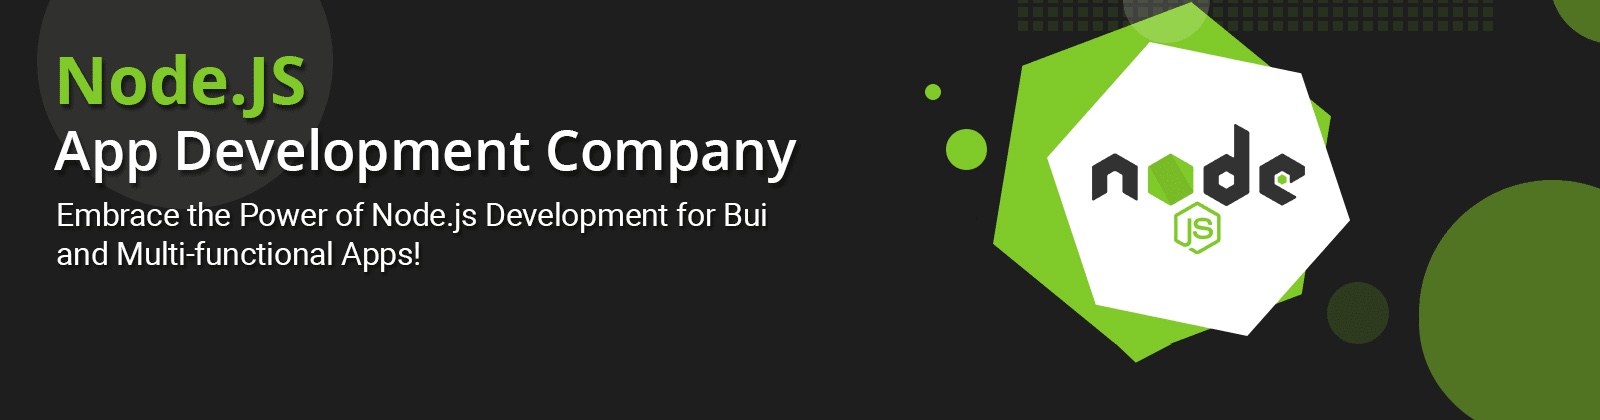 Node.js app development company